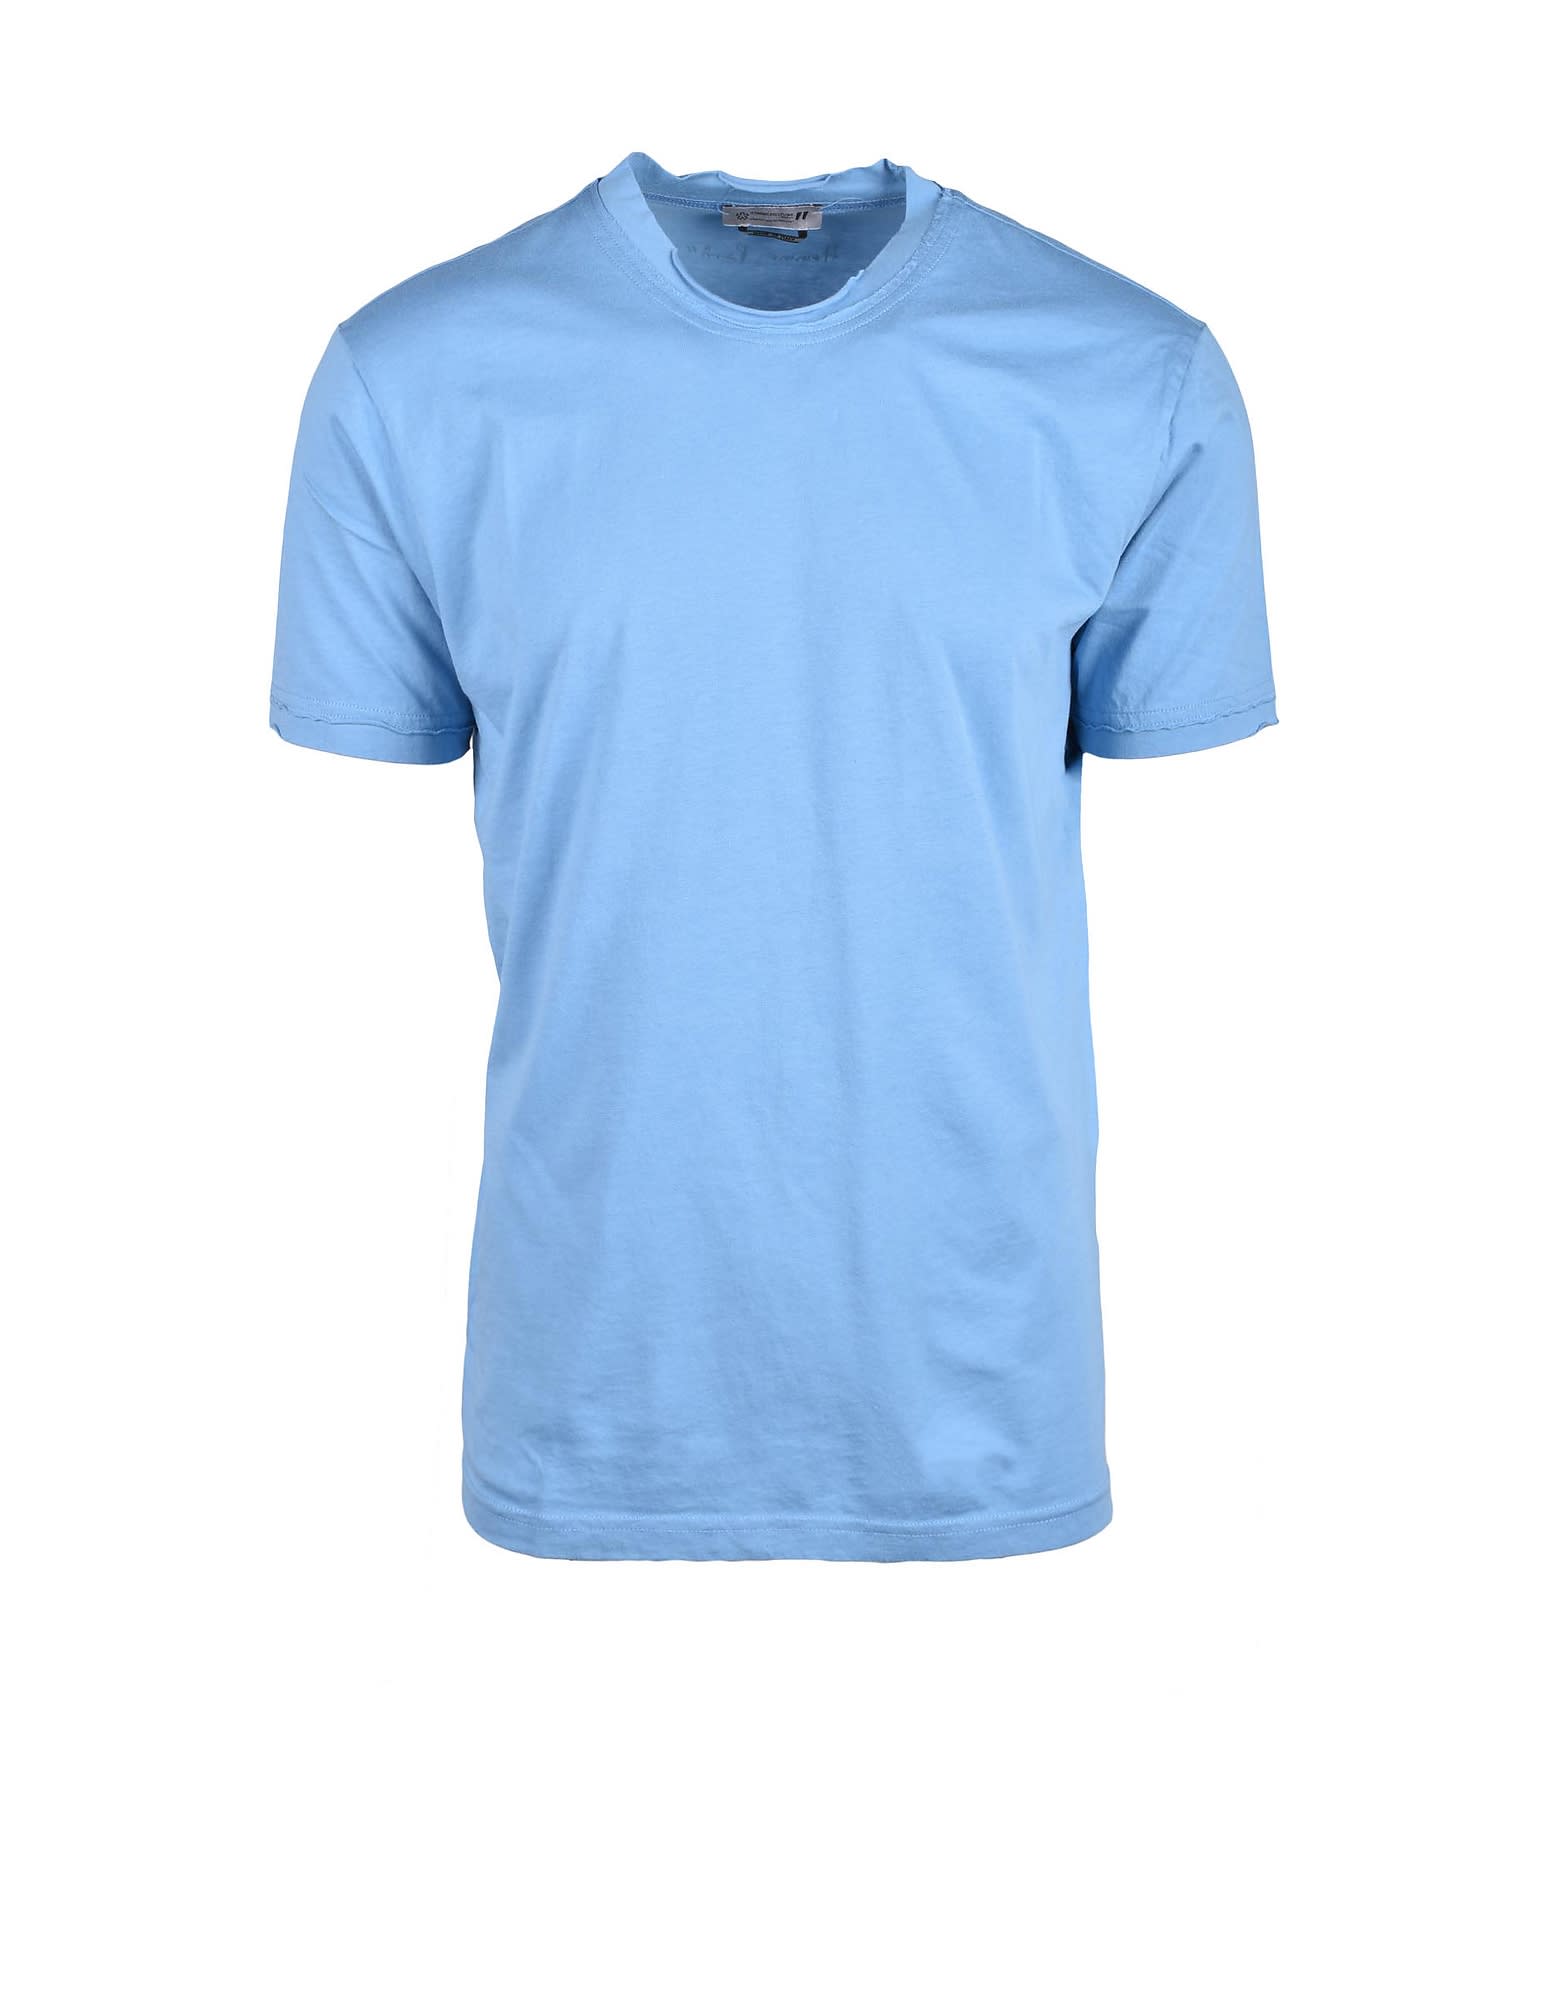 Mens Sky Blue T-shirt